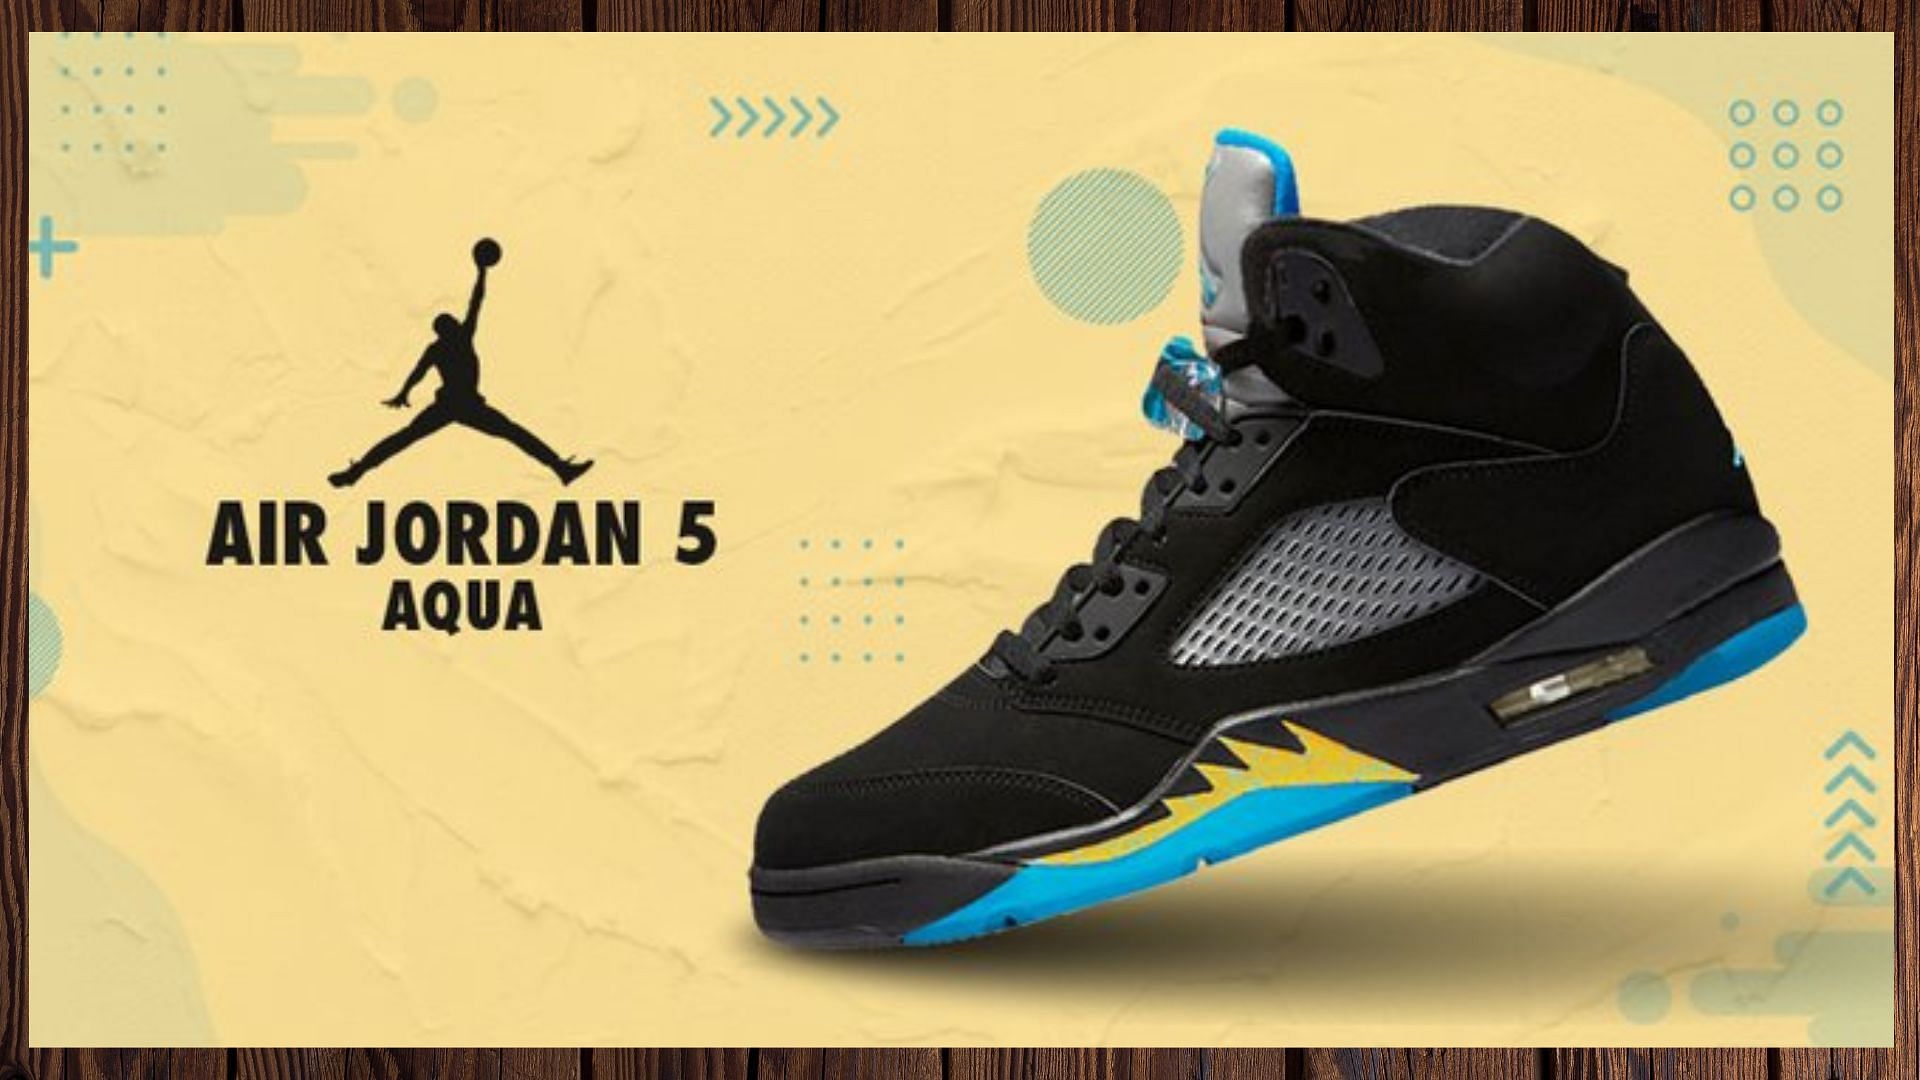 Where to buy Air Jordan 5 Aqua release date more details explored